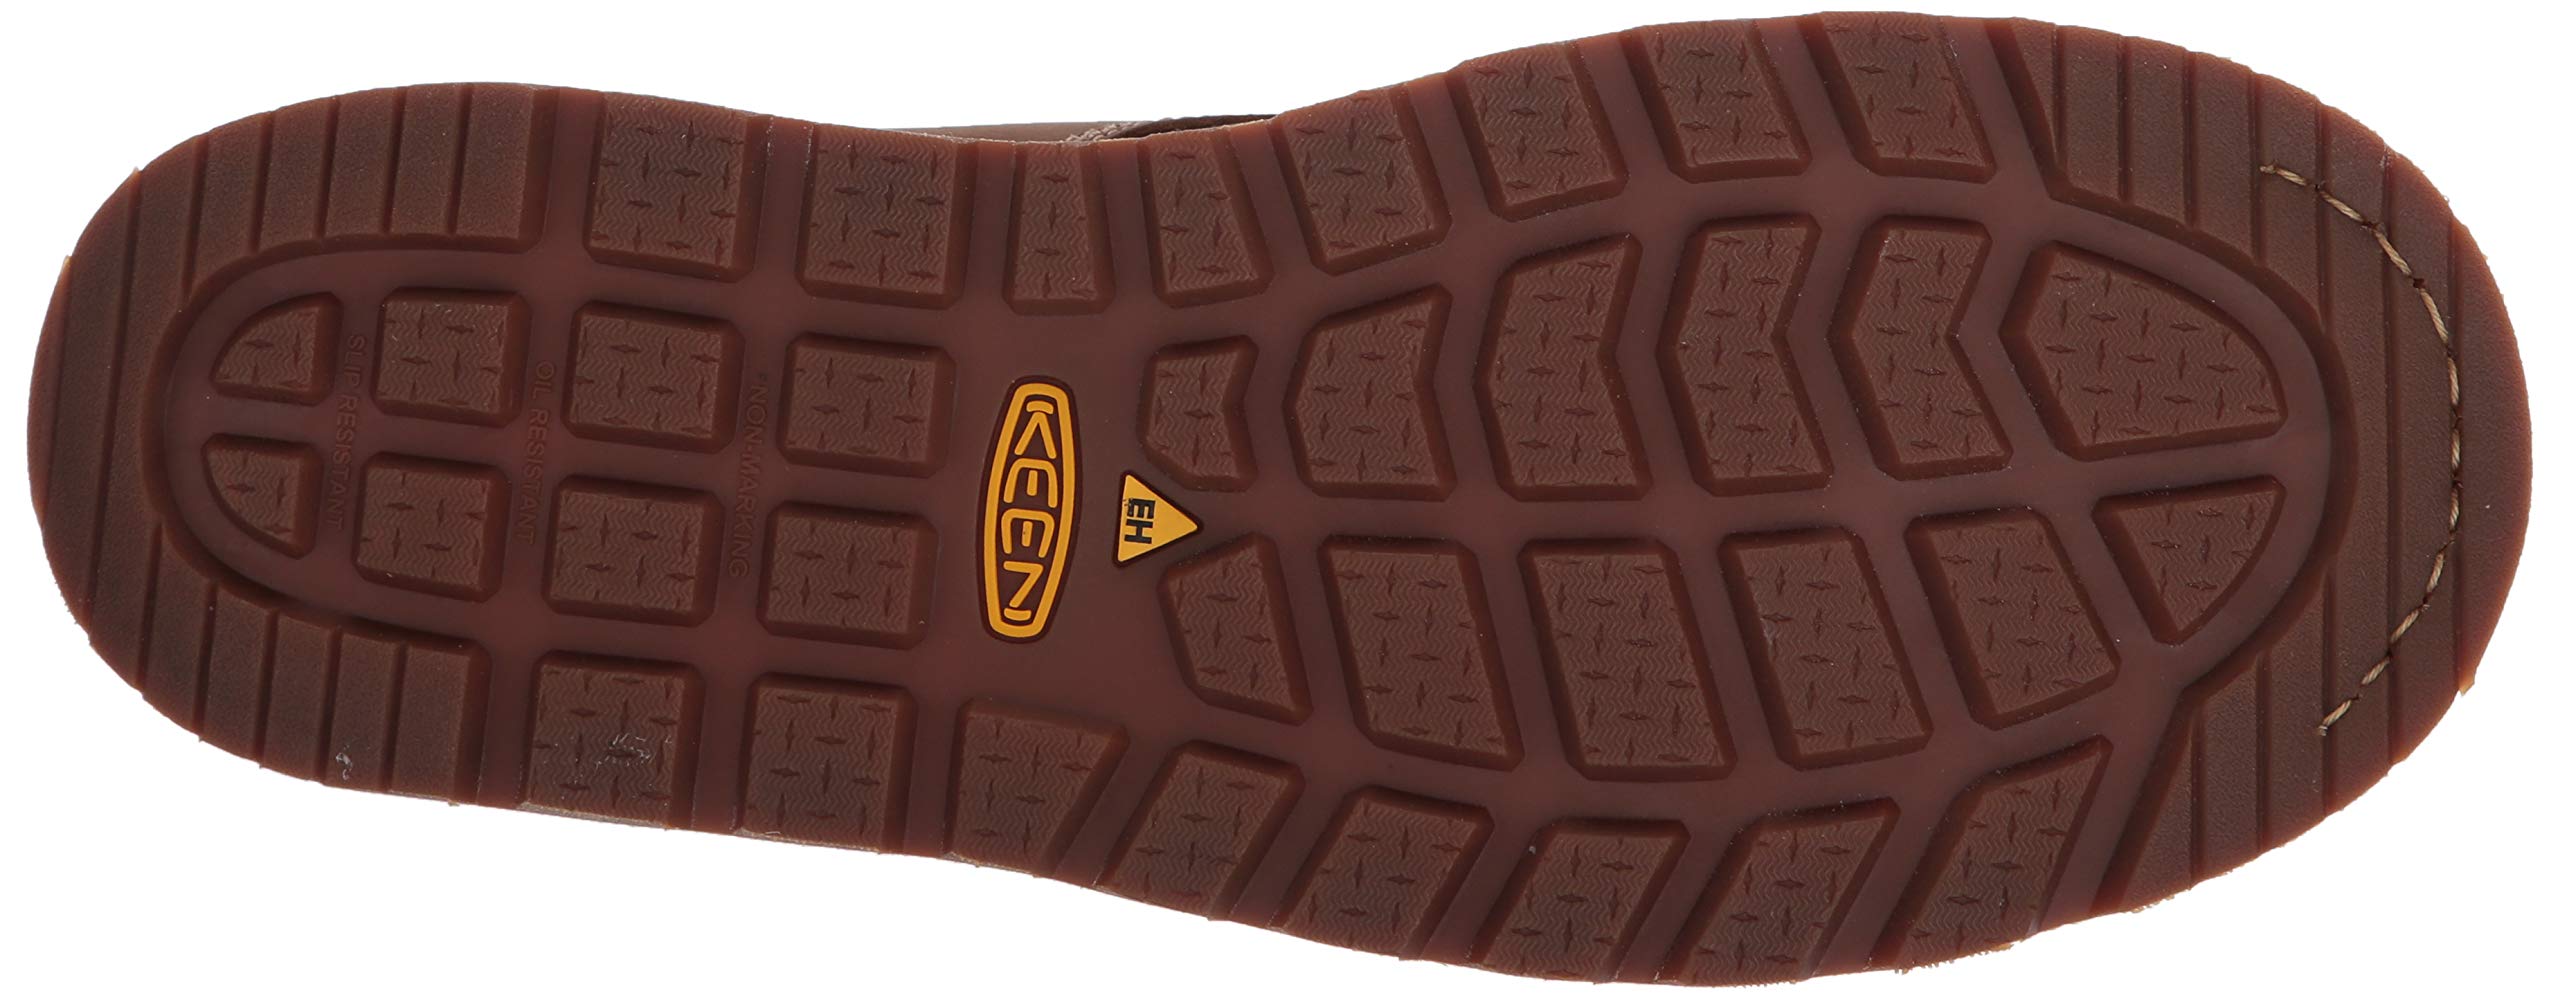 KEEN Utility Men's Cincinnati 6” Composite Toe Waterproof Wedge Work Boots, Belgian/Sandshell, 10 2E (Wide) US